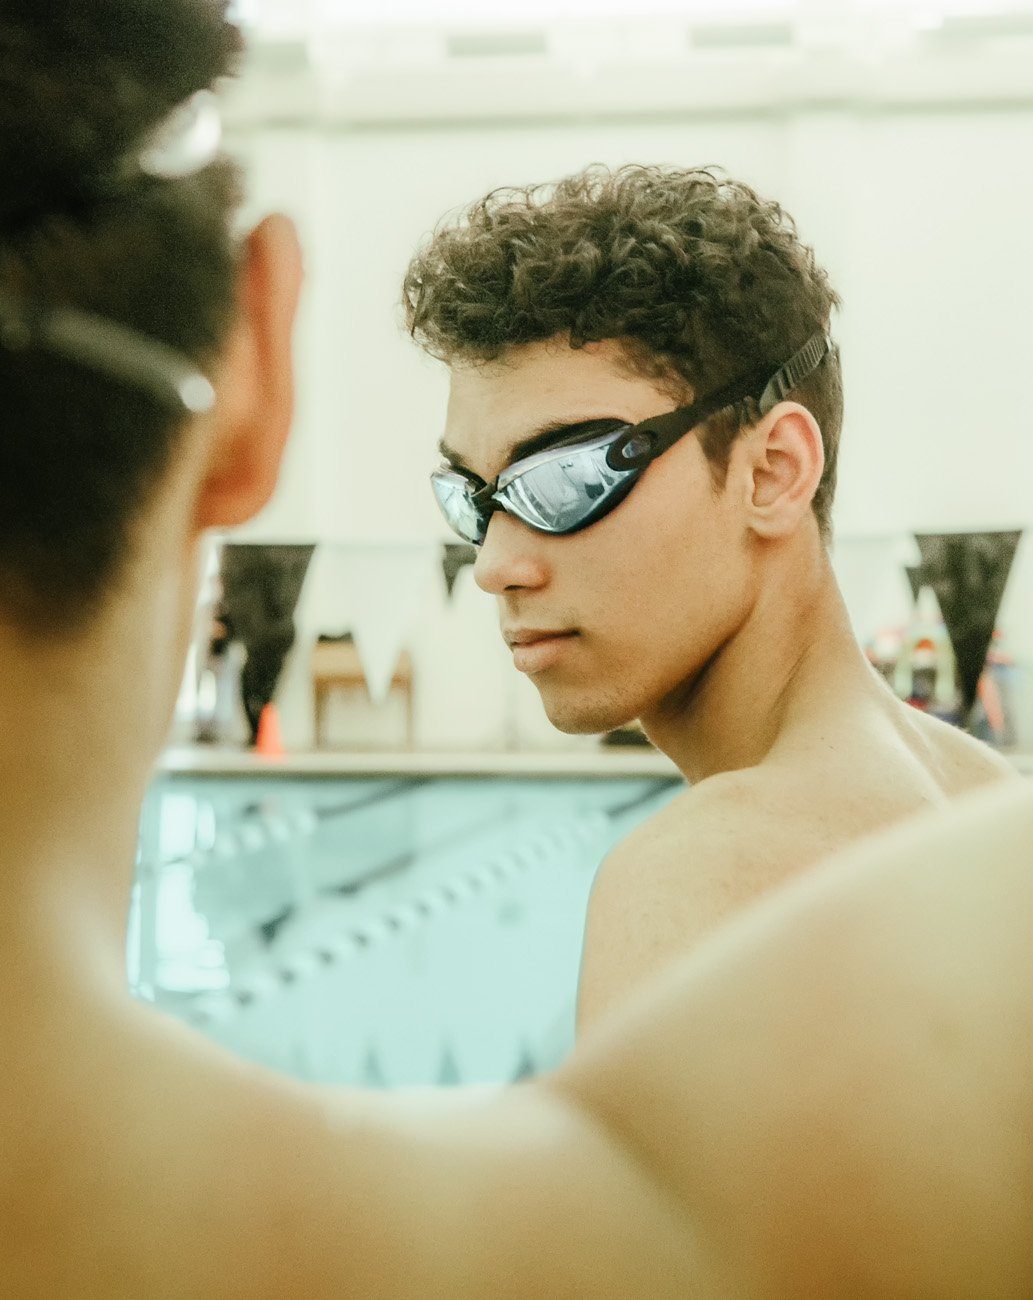 PRECORN Schwimmbrille Taucherbrille Erwachsene Männer Schutz Damen Teenager Antibeschlag/UV